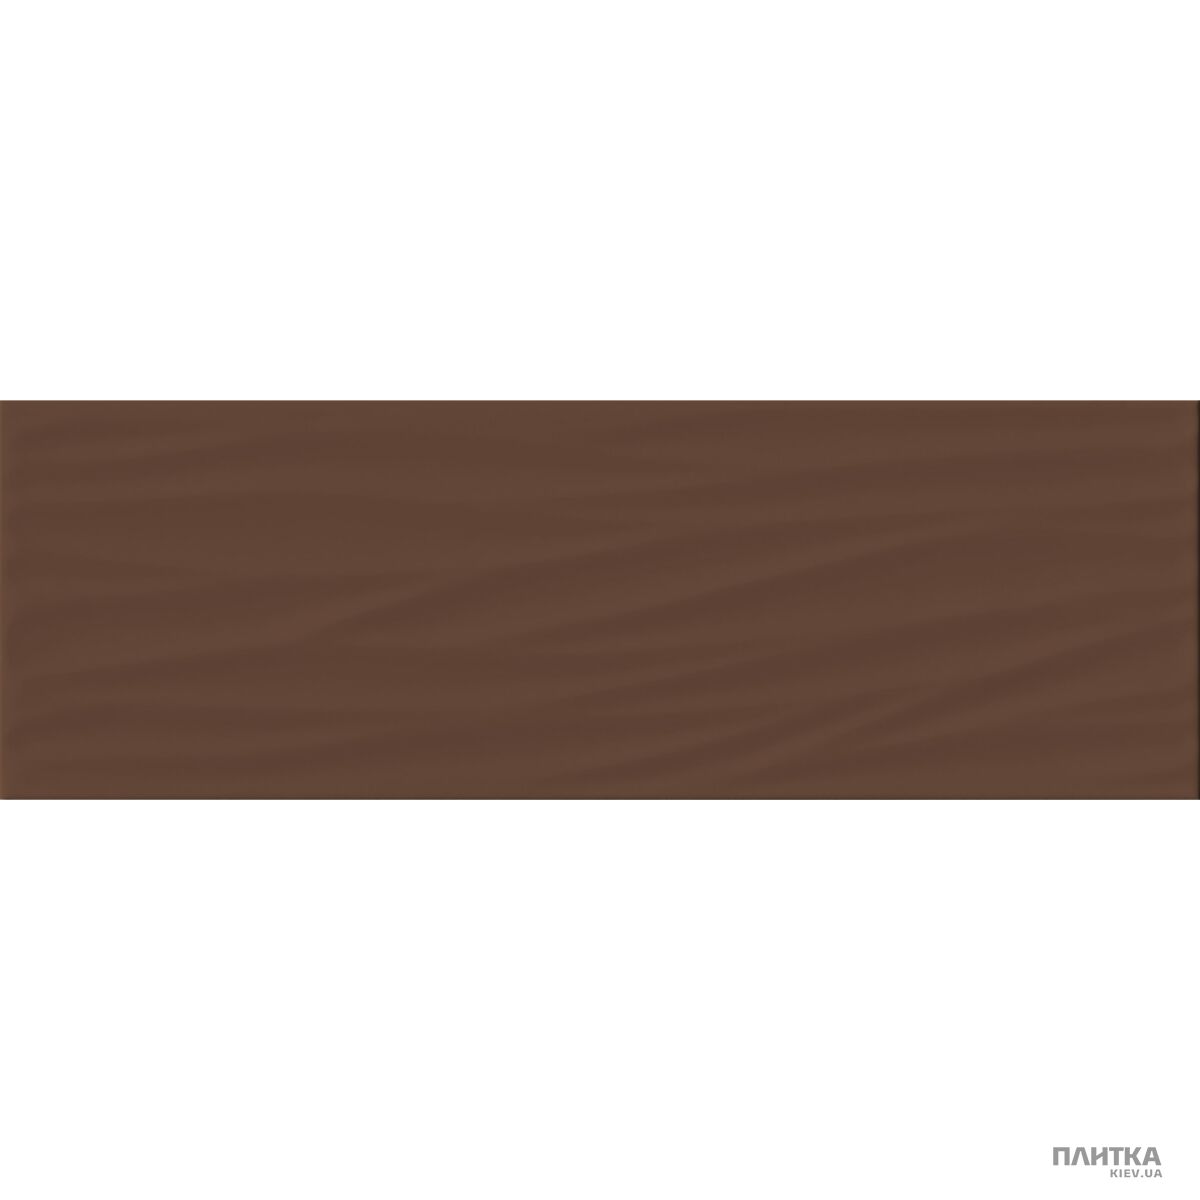 Плитка Imola Antigua ANTIGUA T1 коричневый